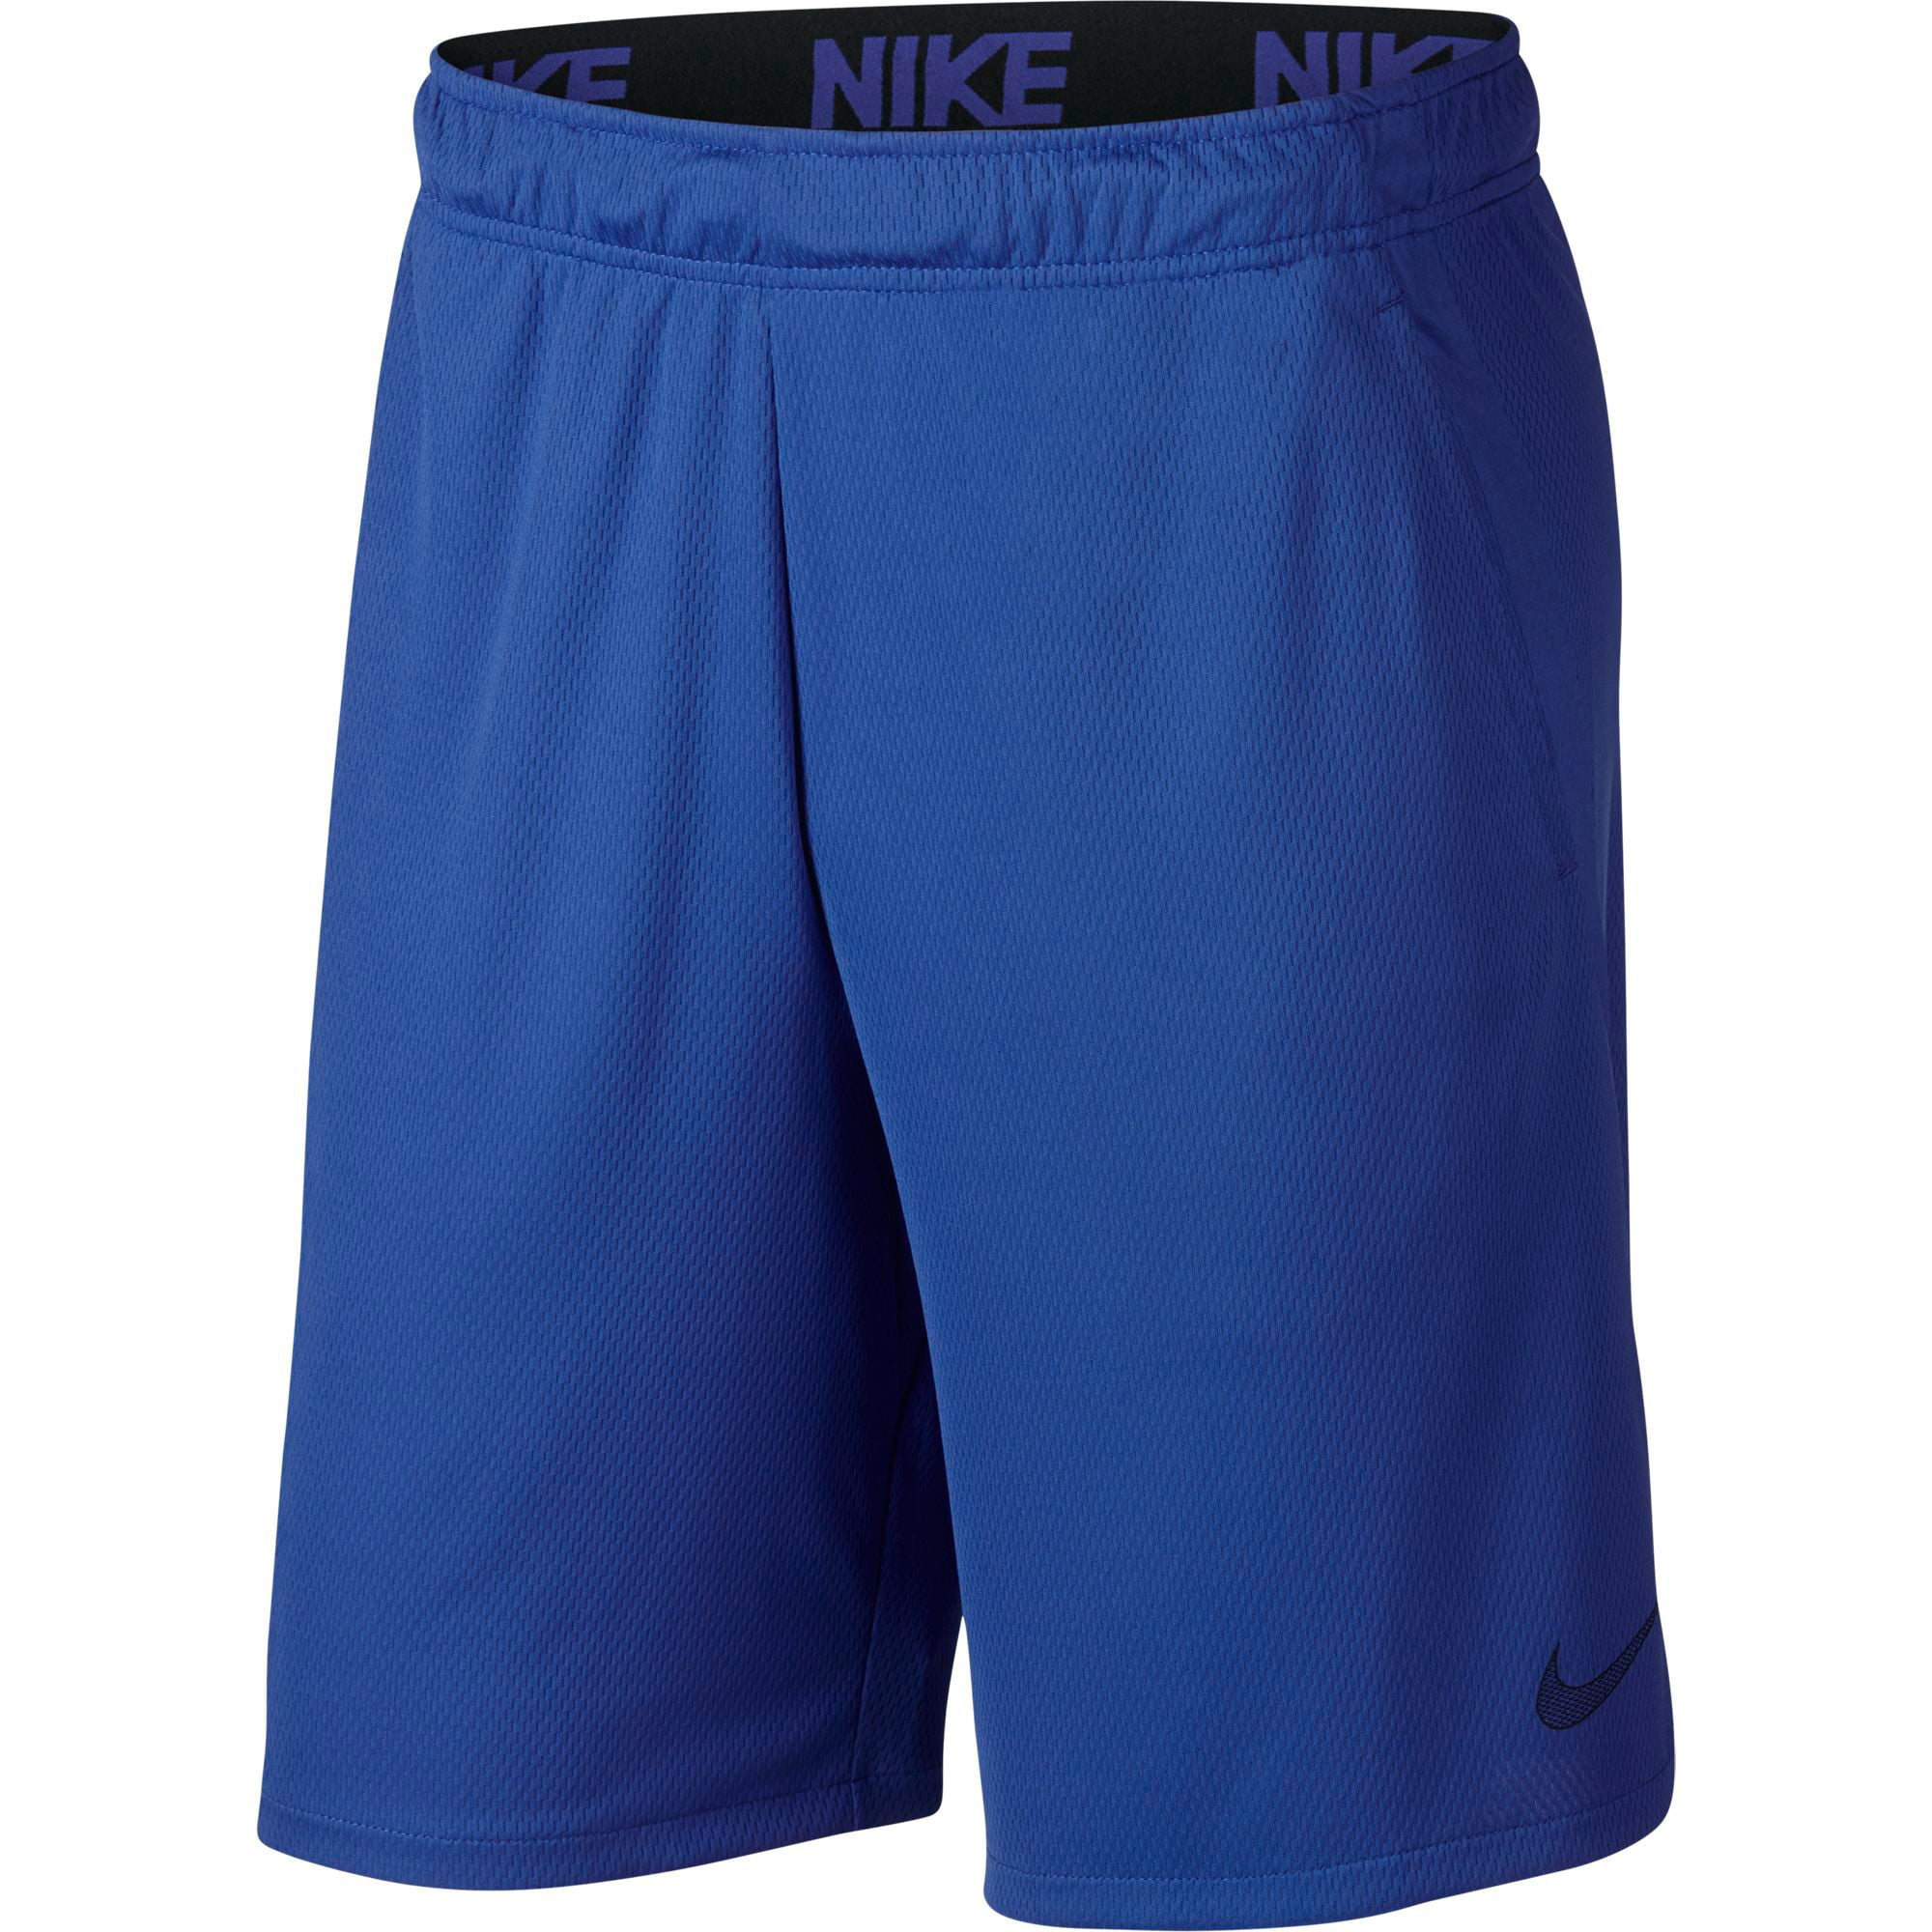 nike dry 4.0 training shorts